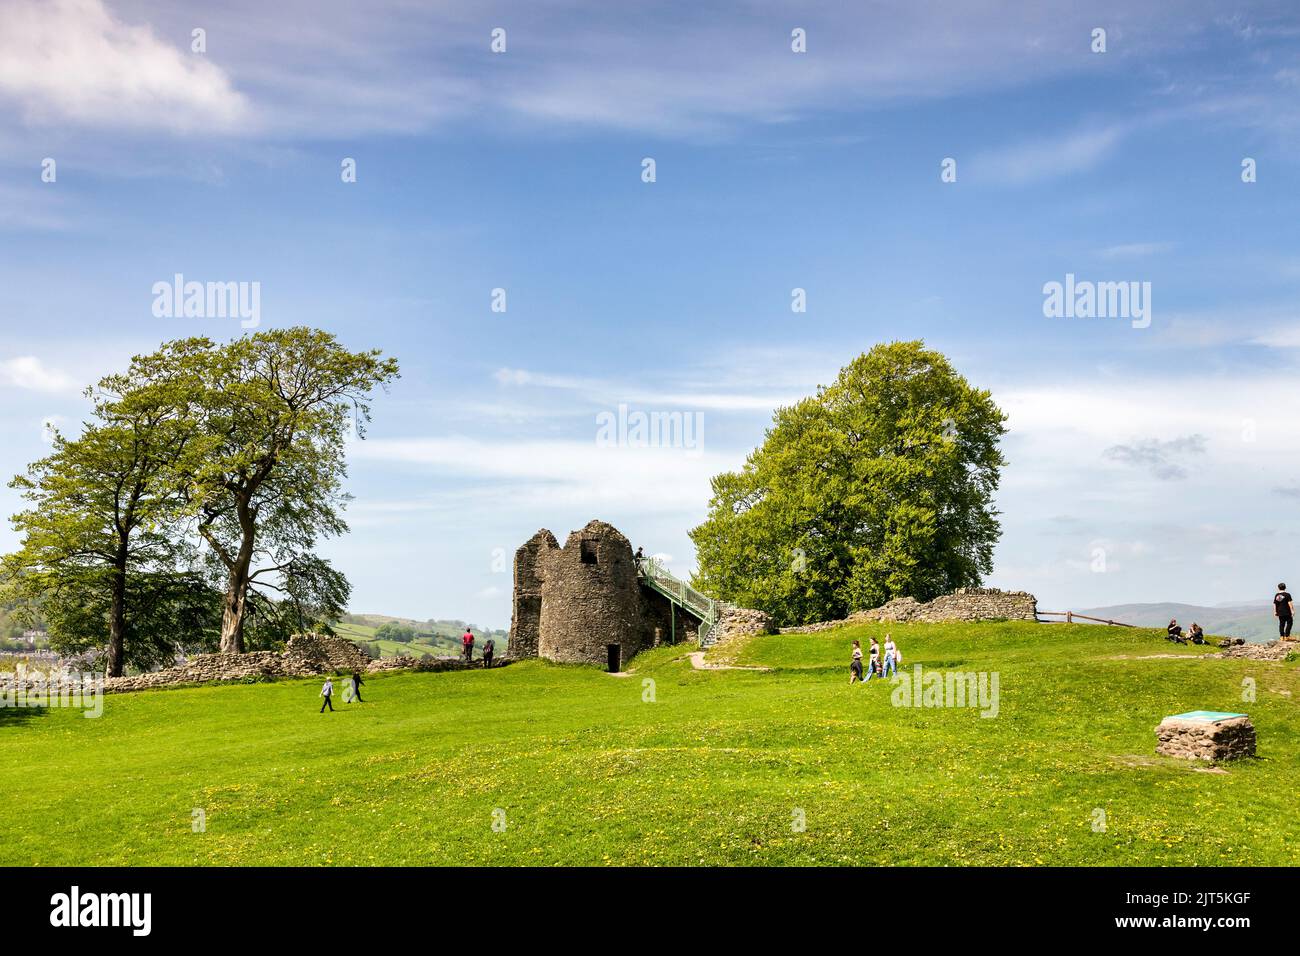 14 maggio 2022: Kendal, Cumbria, UK - il castello in una bella giornata primaverile, con alberi, erba e persone che camminano intorno. Foto Stock